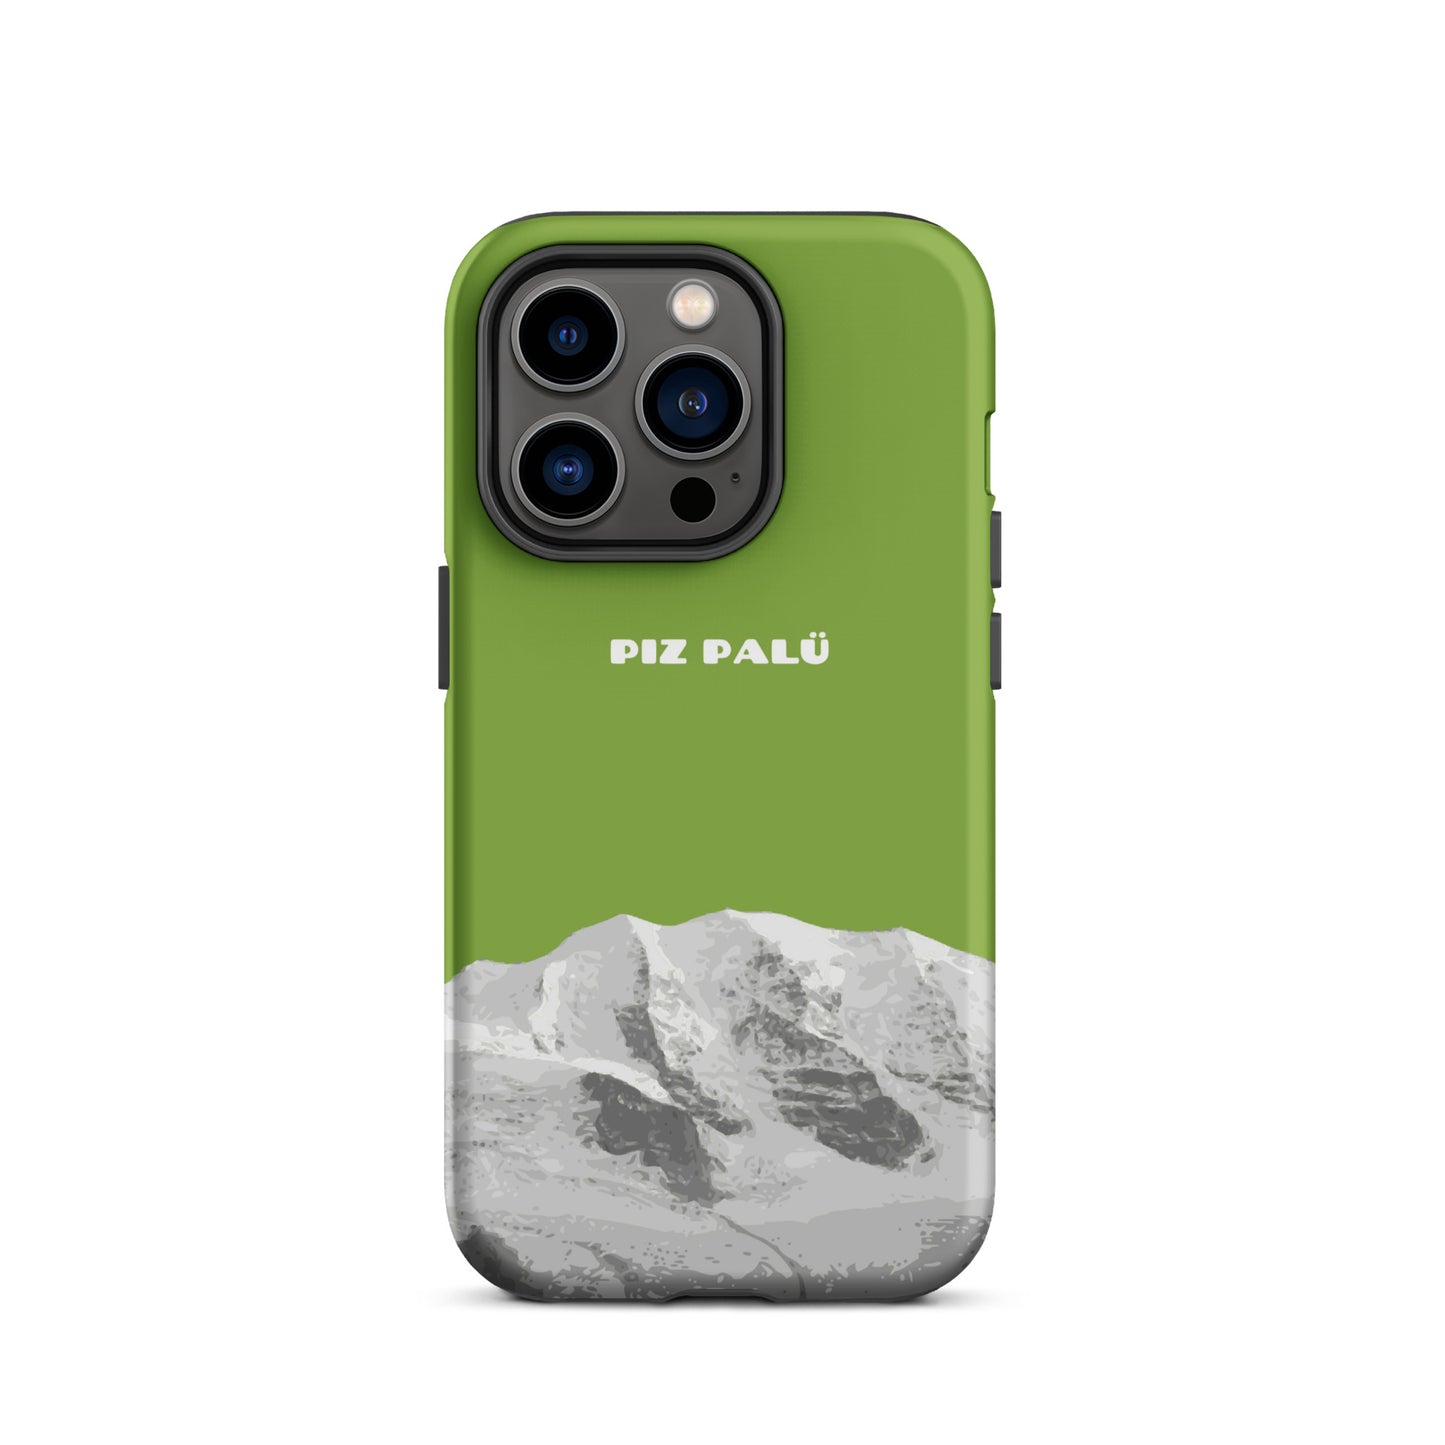 Hülle für das iPhone 14 Pro von Apple in der Farbe Gelbgrün, dass den Piz Palü in Graubünden zeigt. 